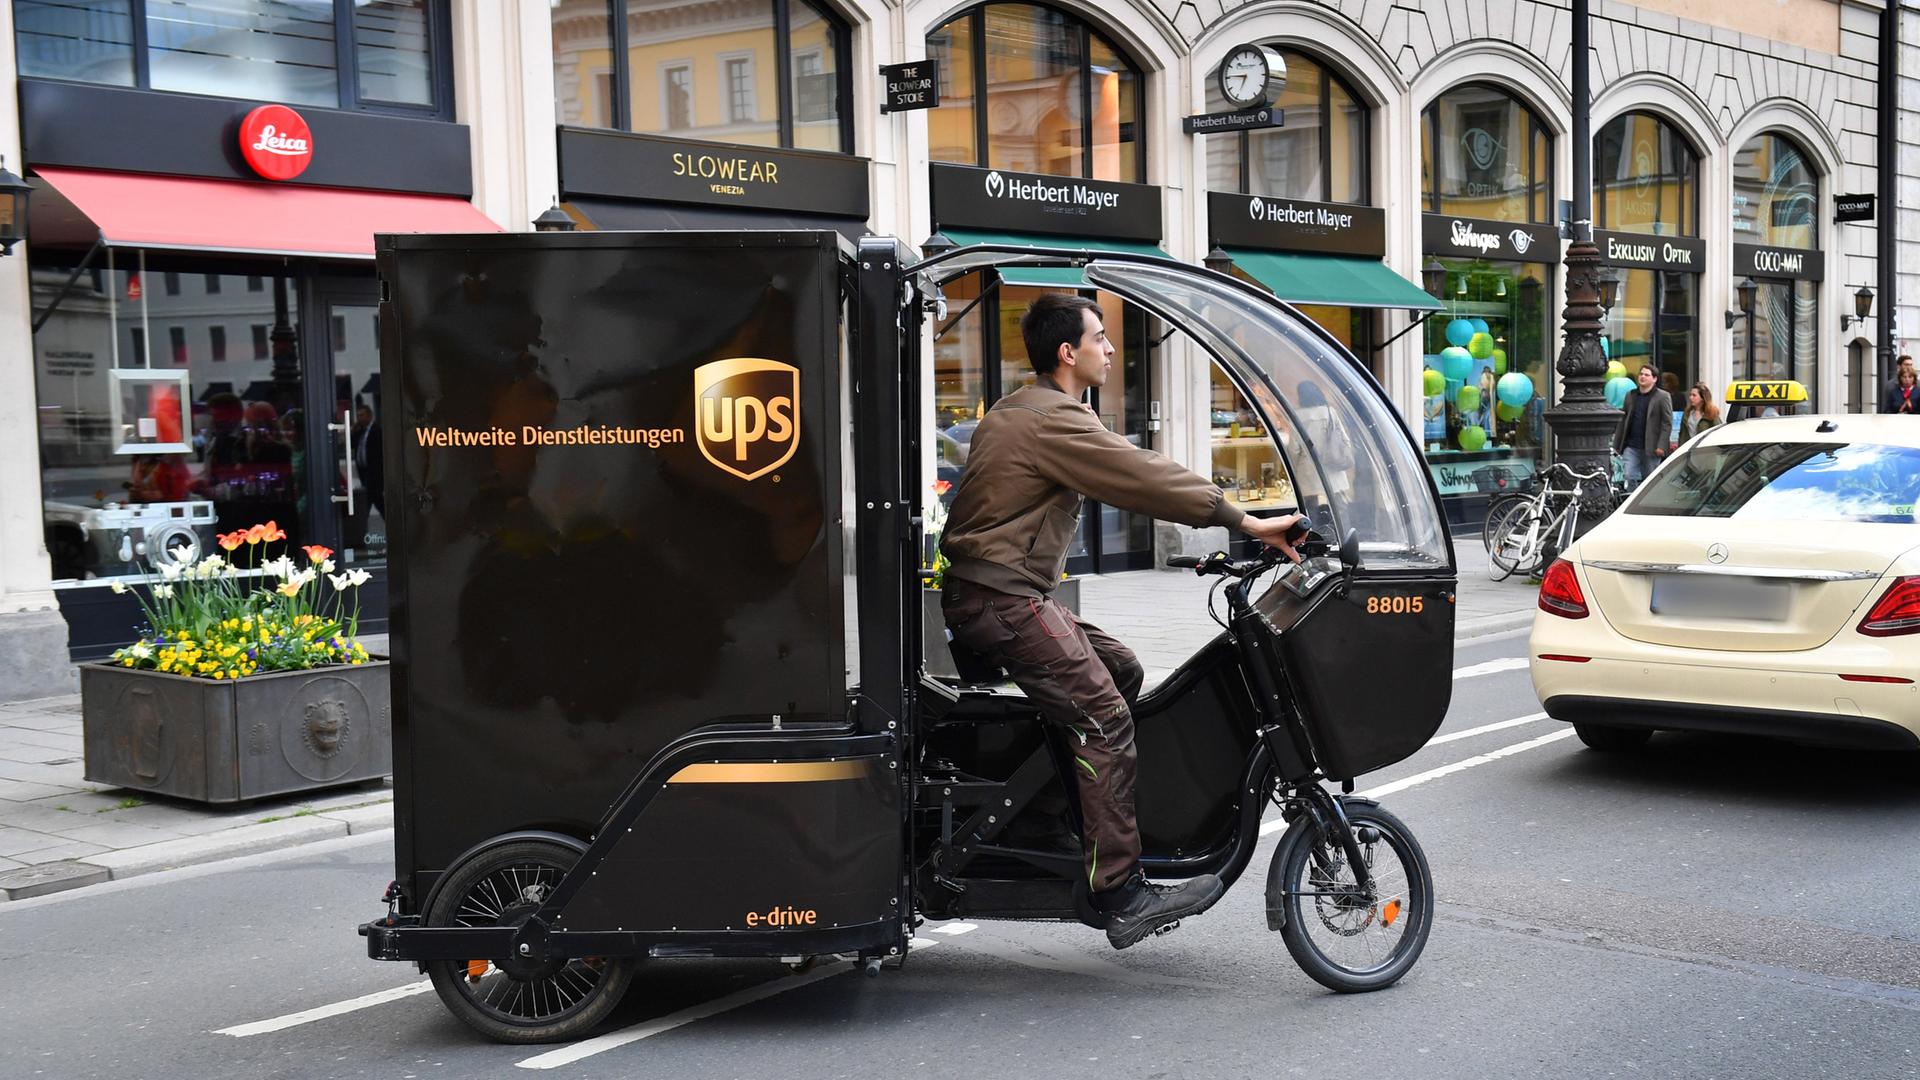 Ein UPS-Paketbote unterwegs mitt einem Rytle Cargo Bike in Muenchen.